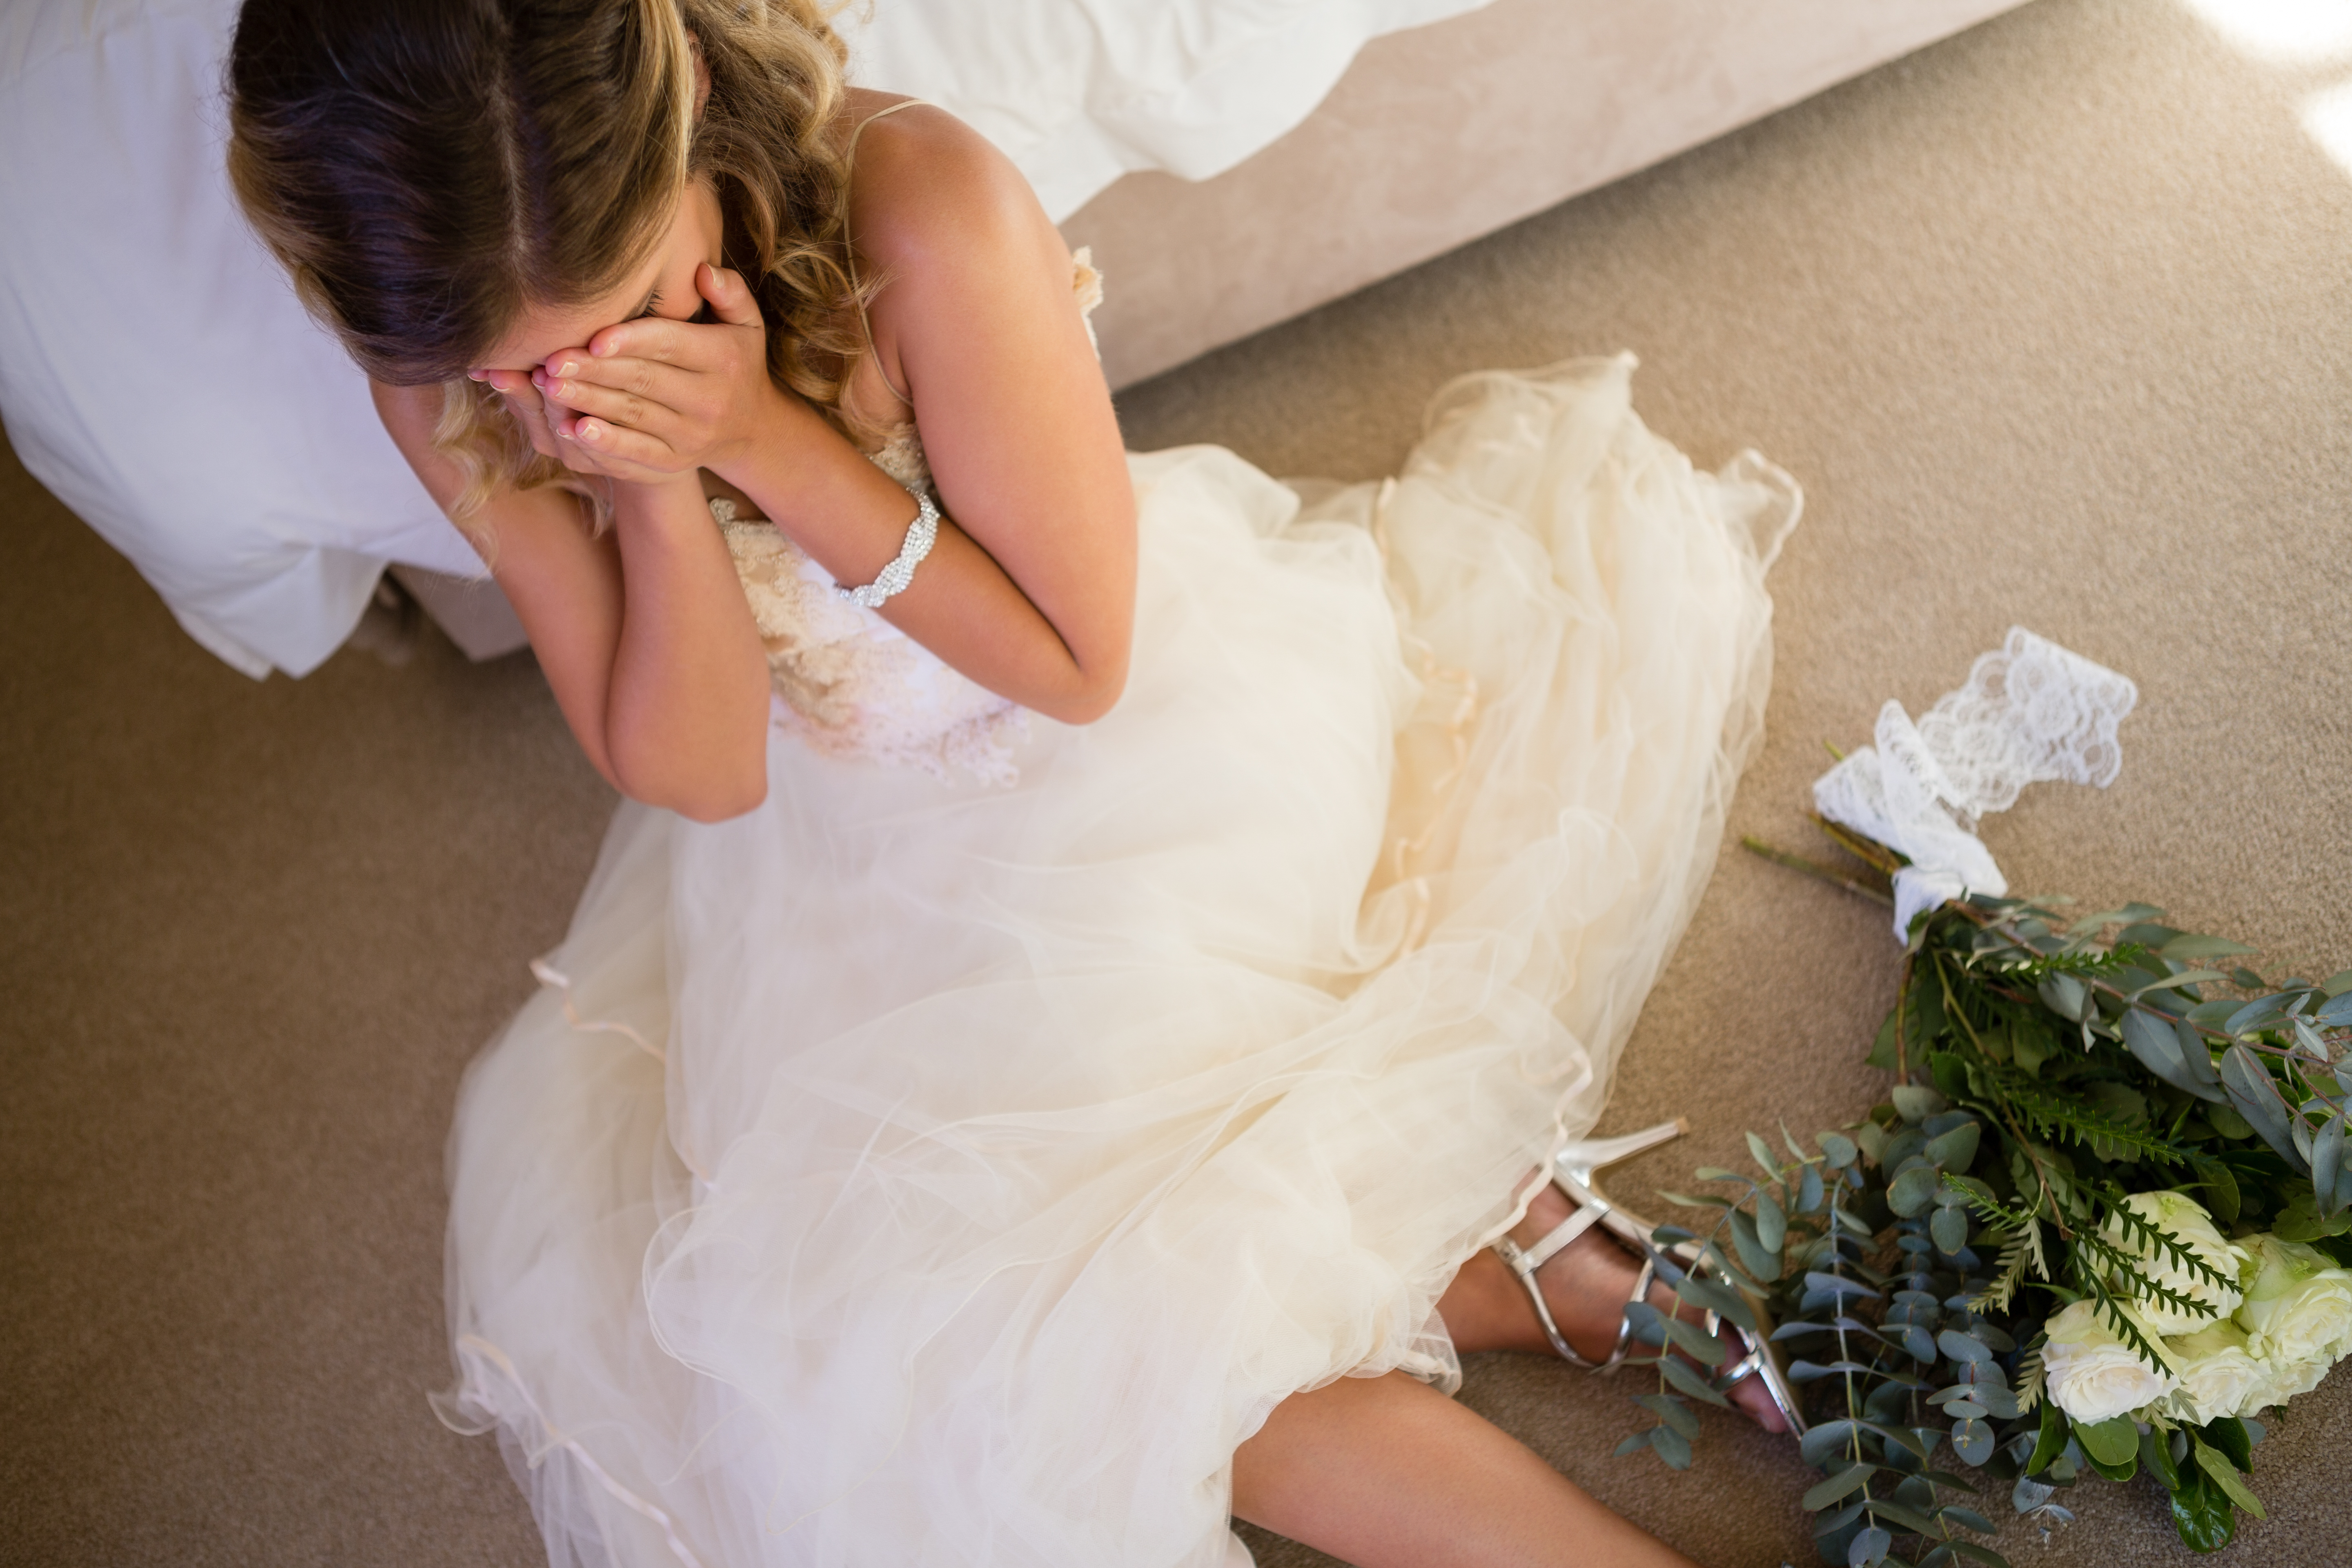 An upset bride | Source: Shutterstock